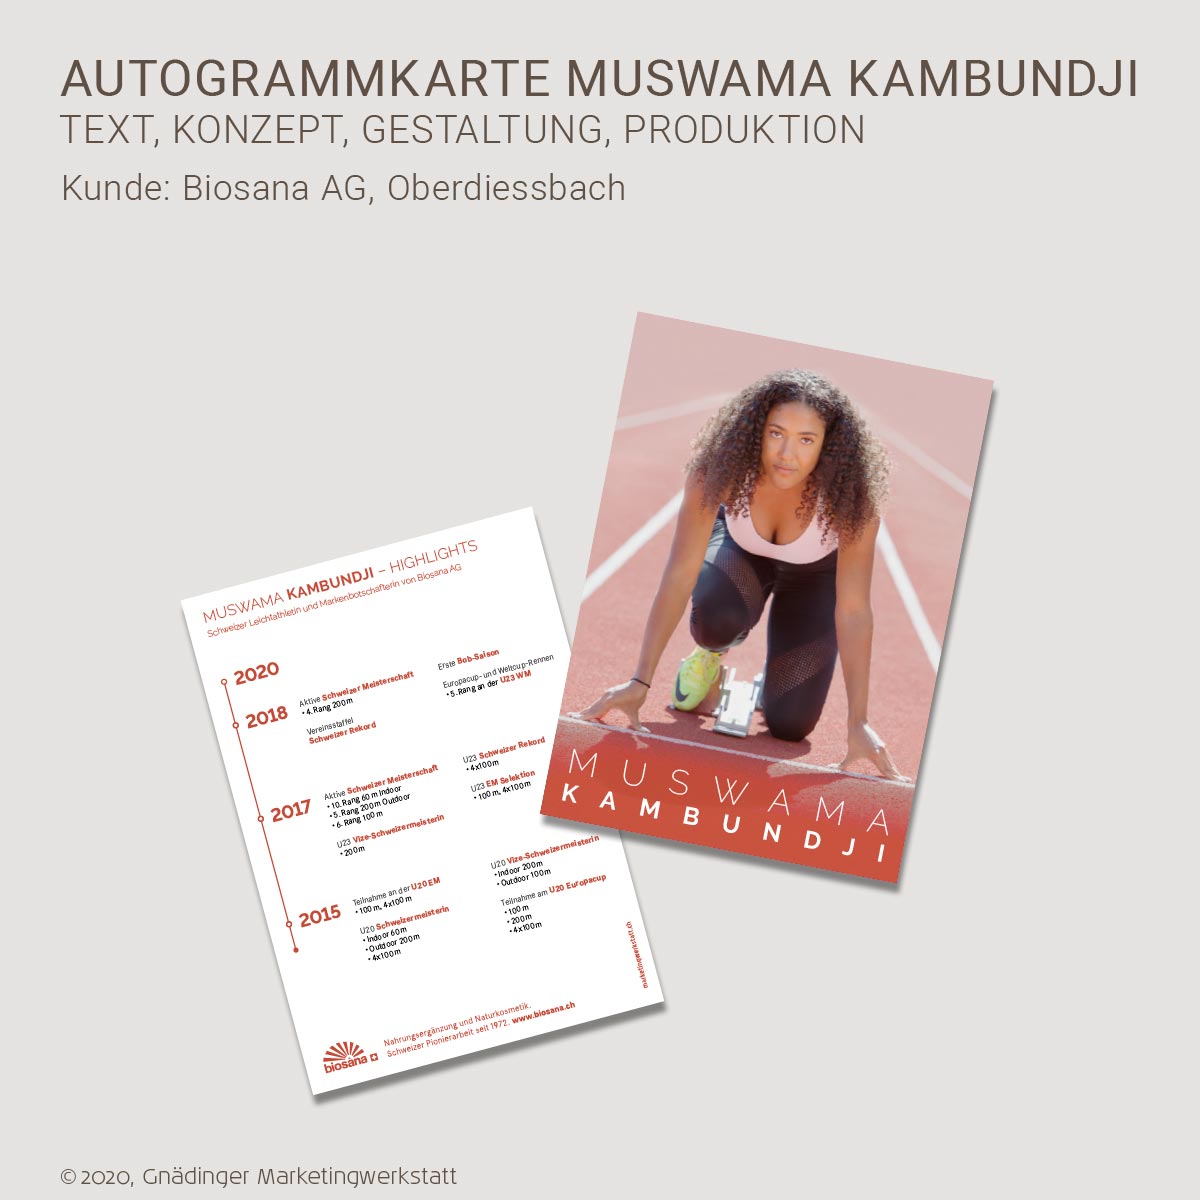 WEB1_GMW_Projekt_Biosana-Autogrammkarte_03-2020_1200x1200px_RGB